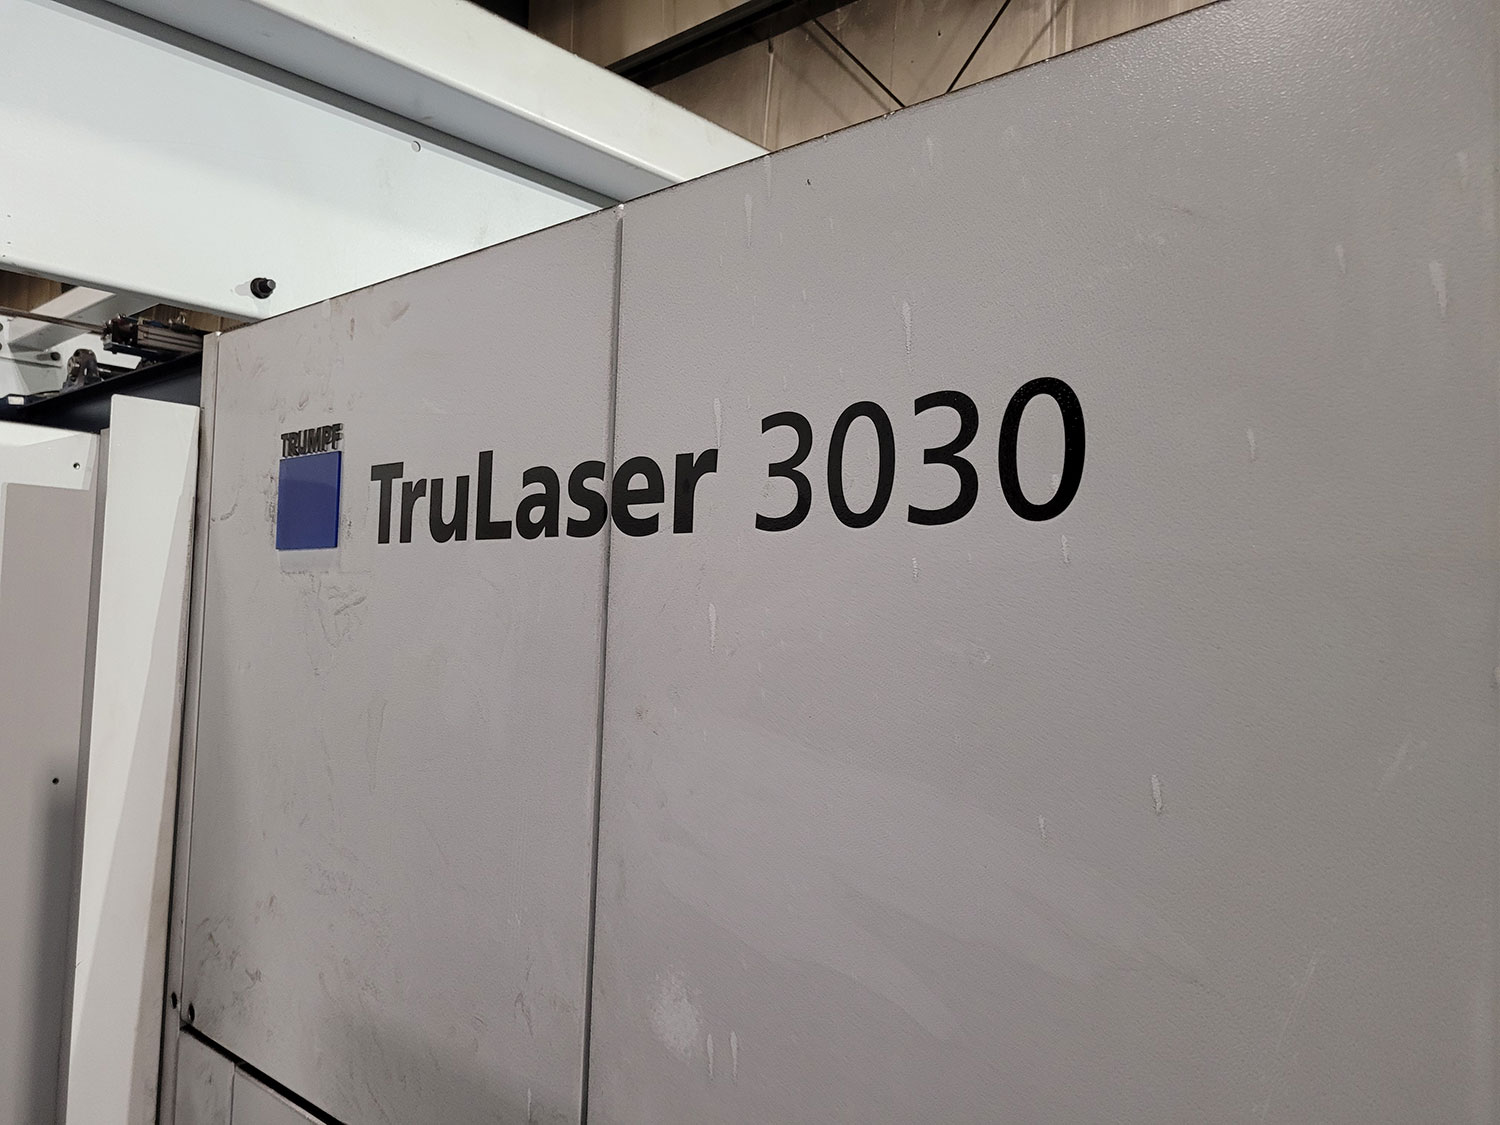 TruLaser 3030 machine